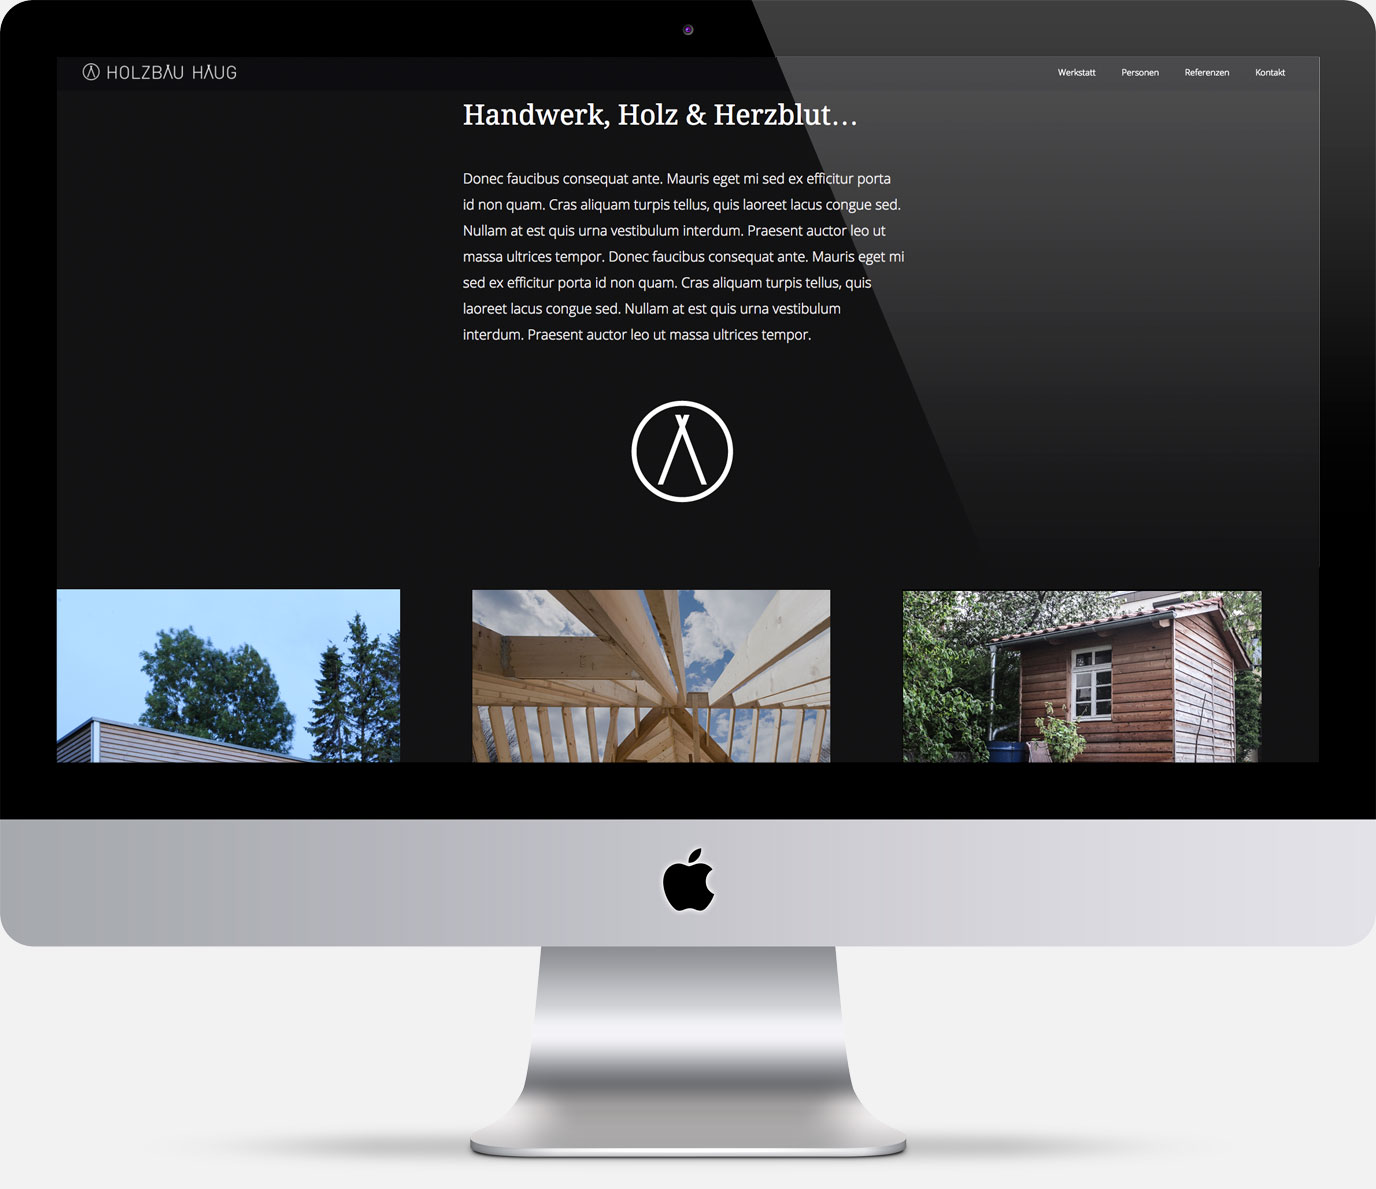 75a, Büro für Gestaltung aus Stuttgart entwirft die Website für Holzbau Haug aus Nürtingen